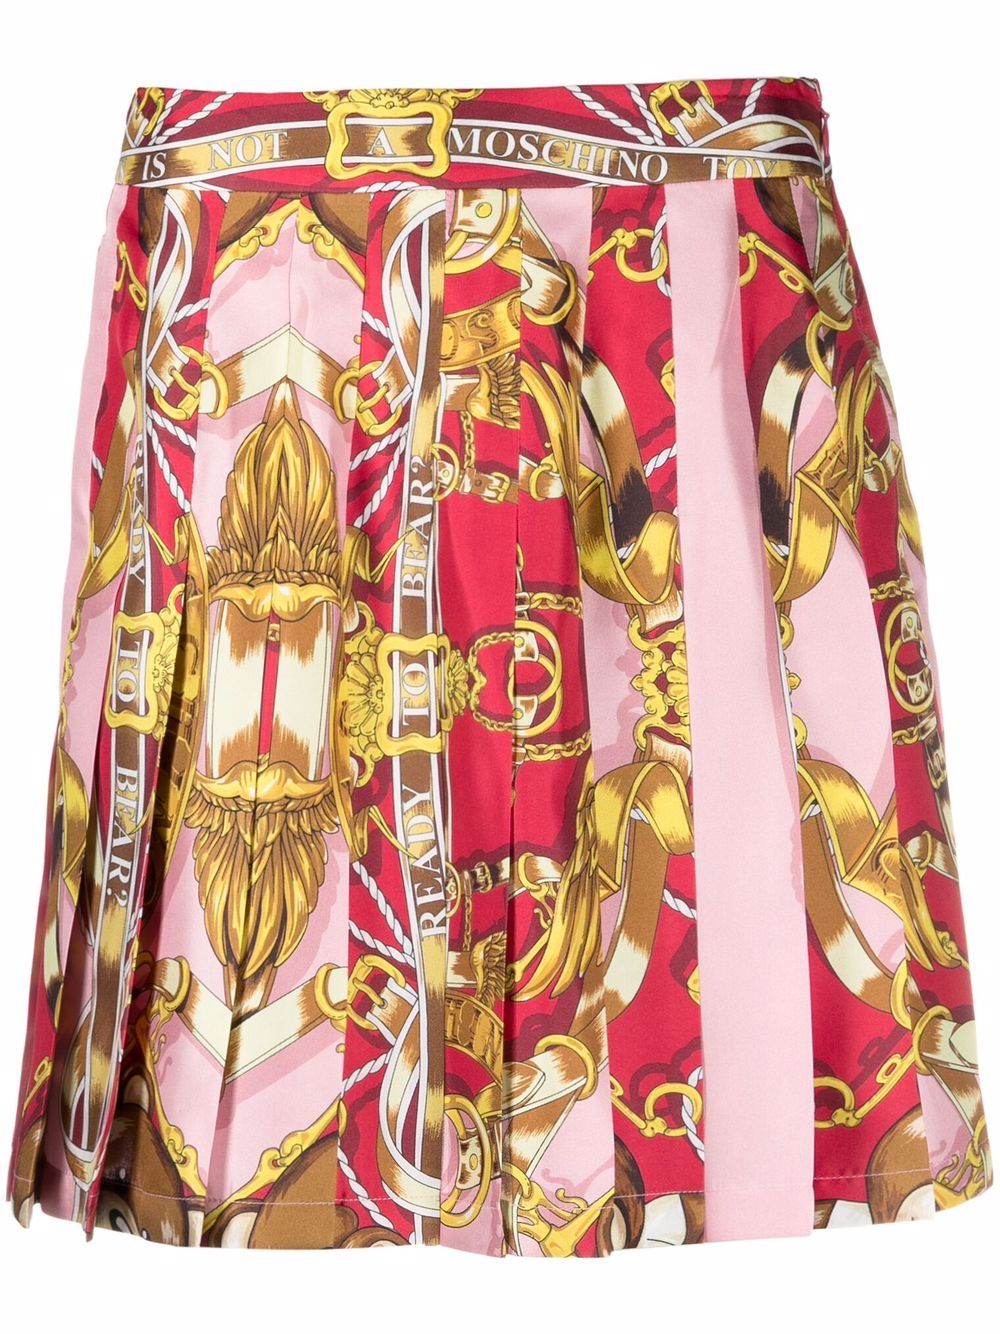 фото Moschino юбка со складками и принтом